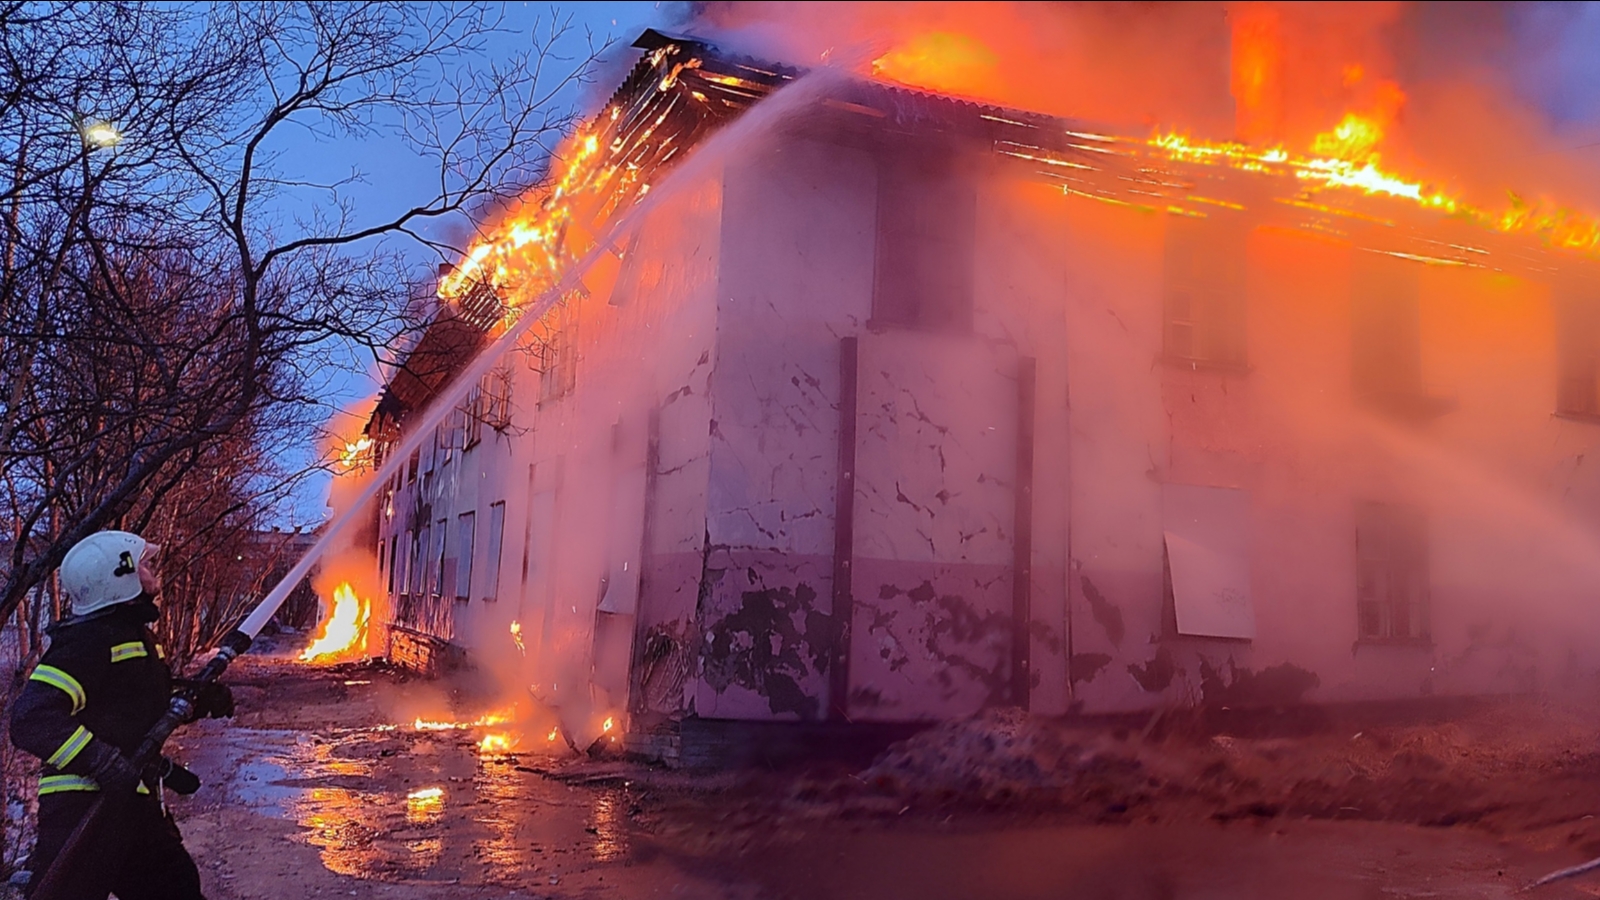 Шесть спасателей тушили пожар в нежилом доме Никеля